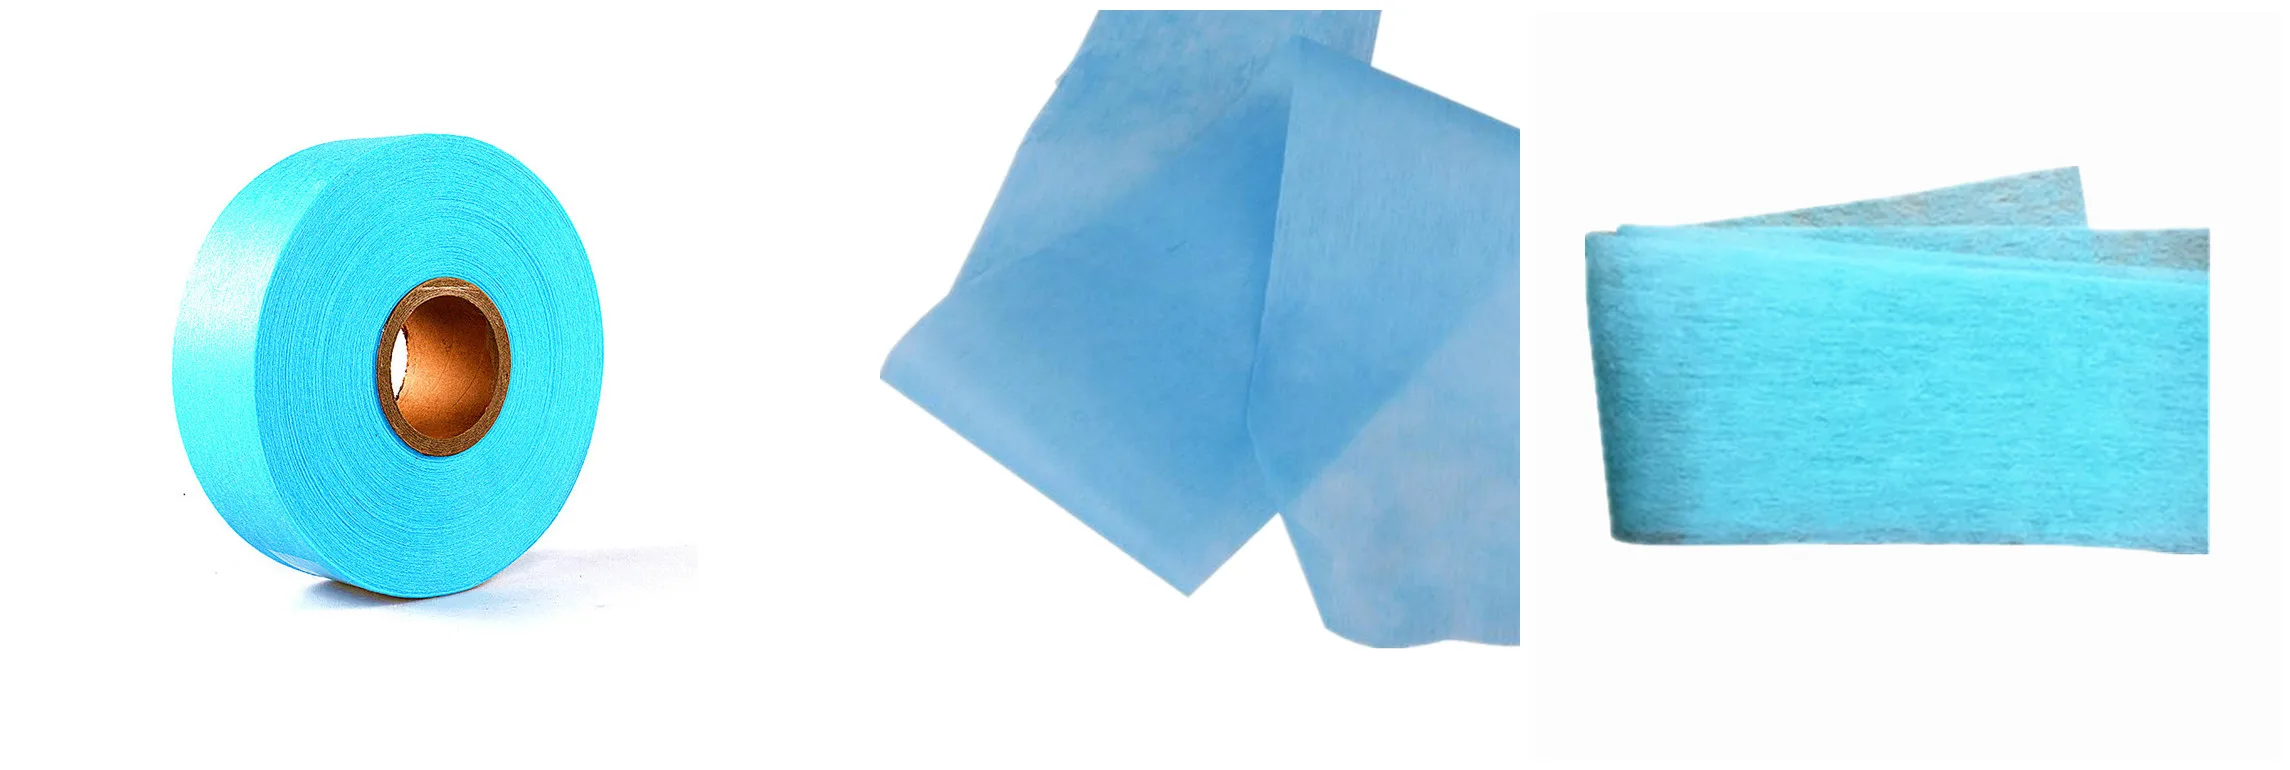 Tã giấy dùng một lần màu xanh ADL có khả năng thấm hút tốt với vải không dệt